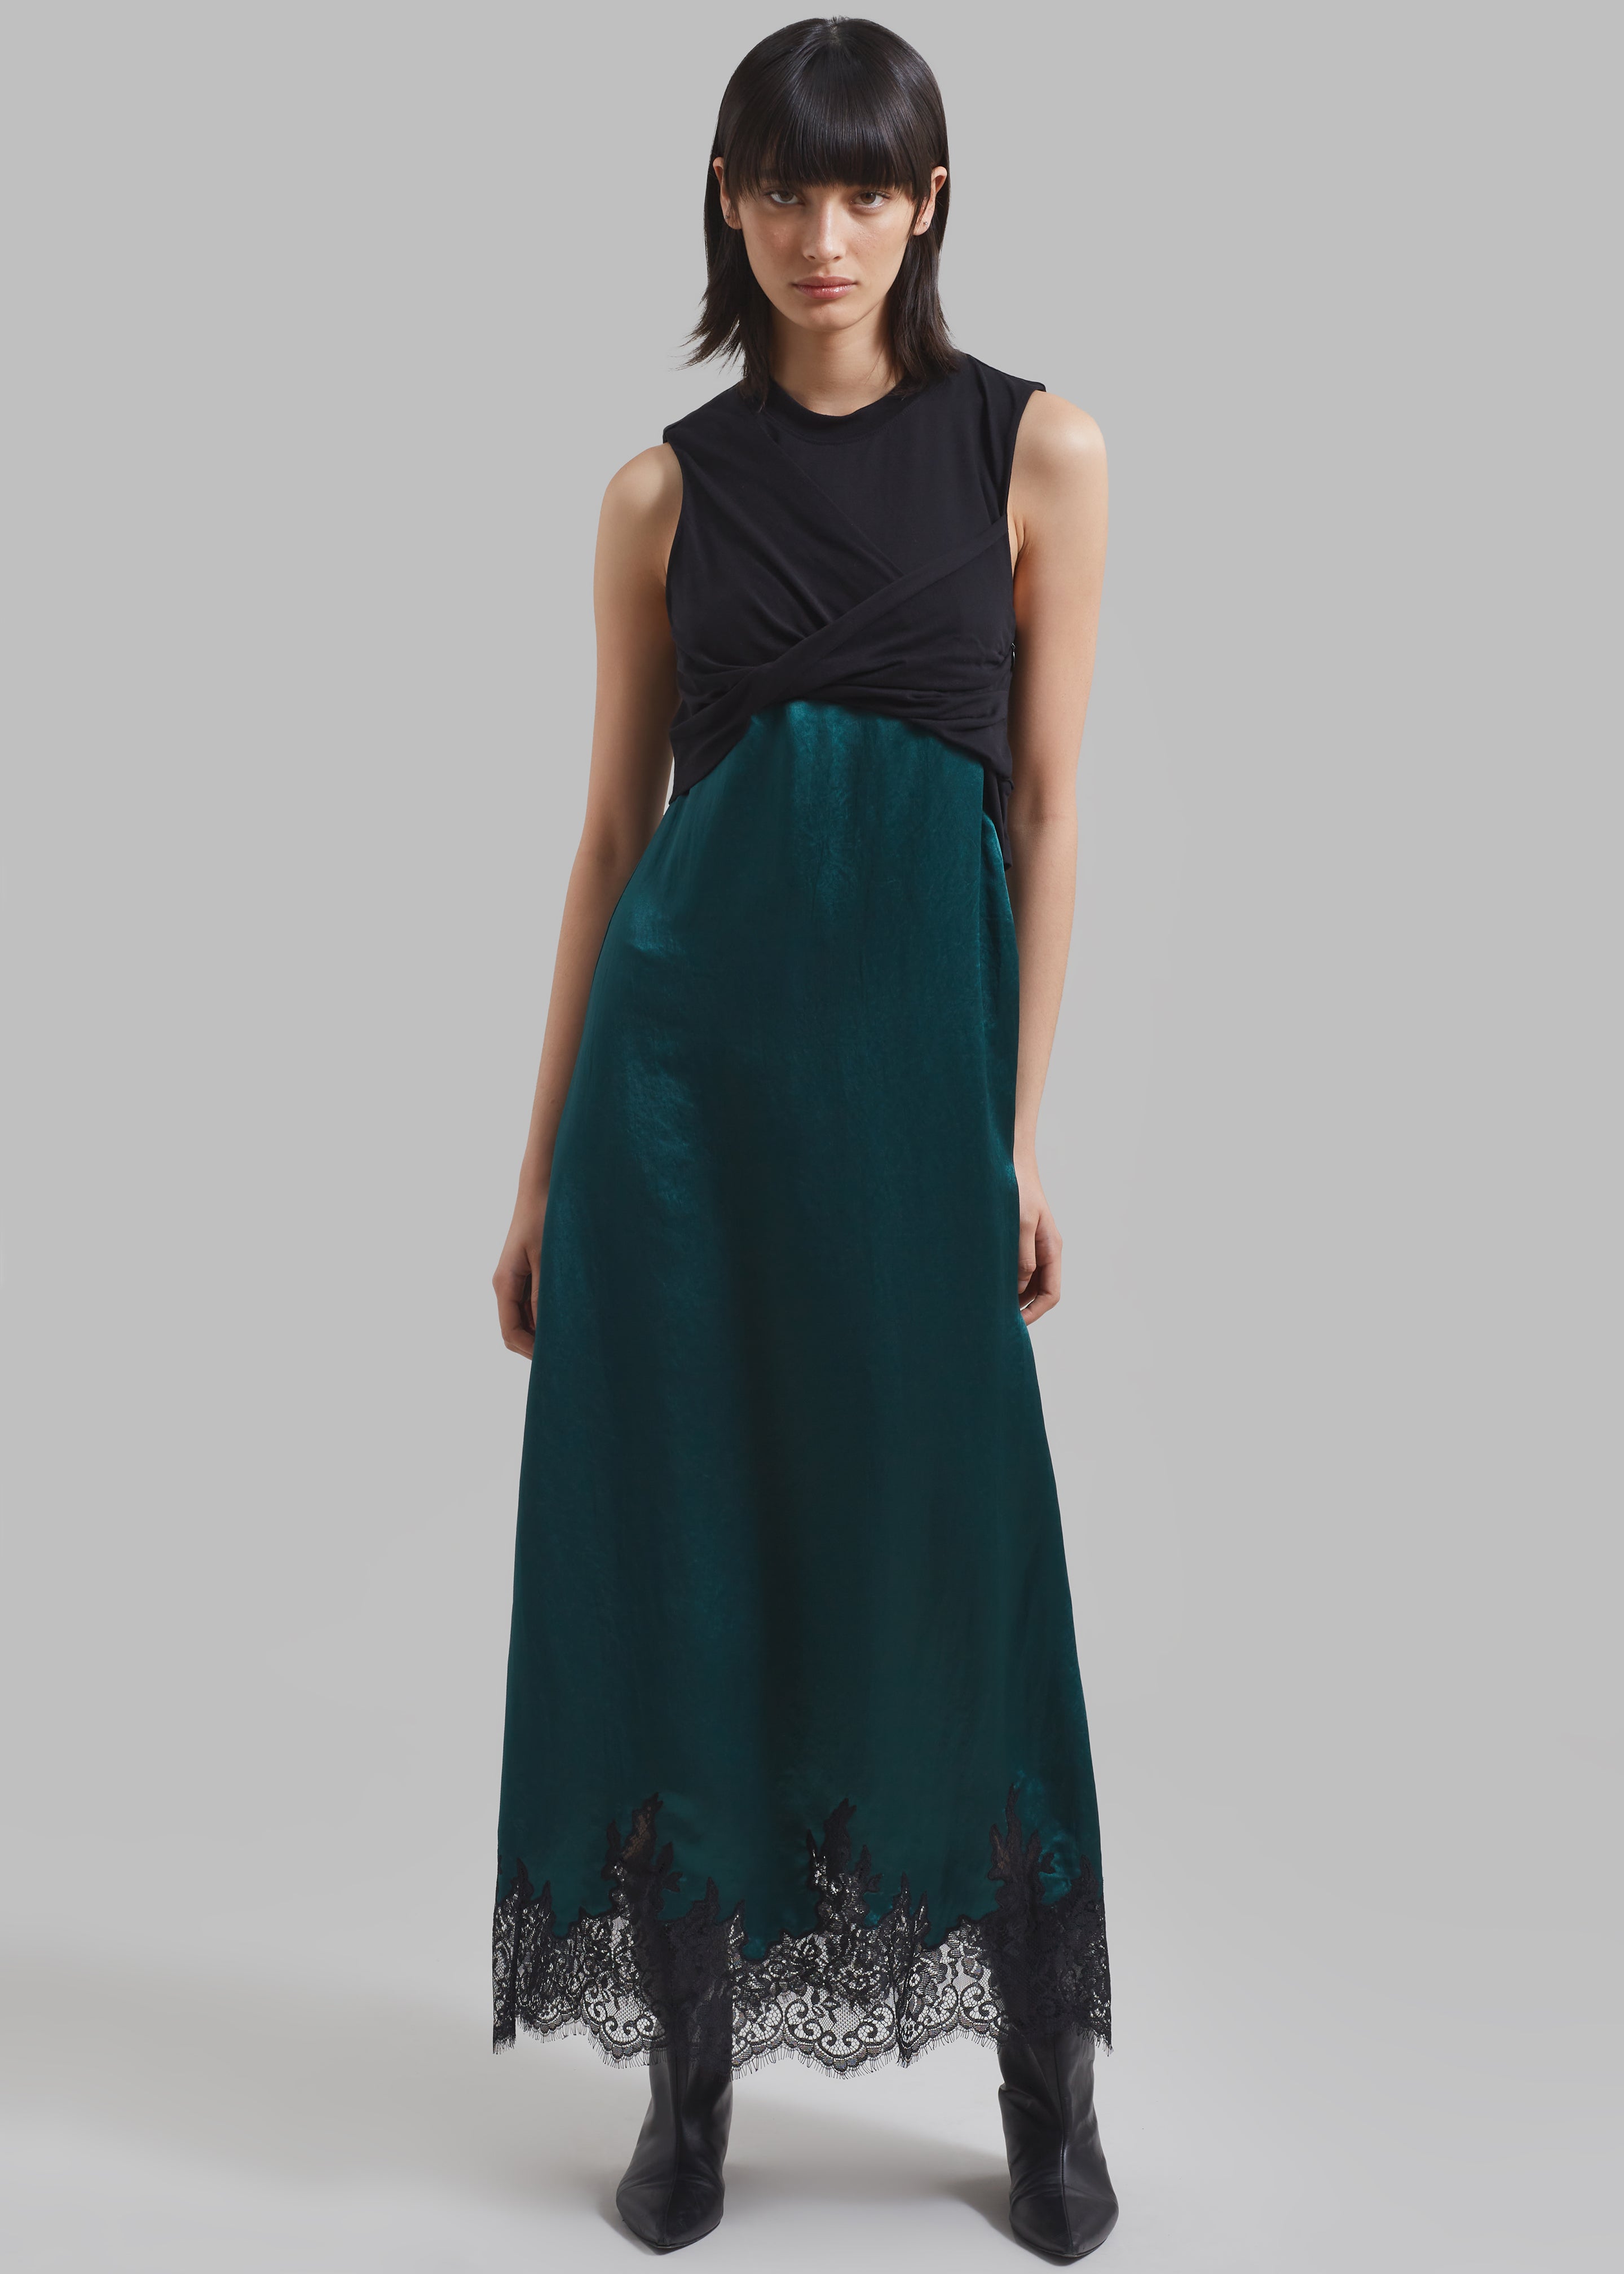 3.1 Phillip Lim Twist Tank Slip Dress - Black/Emerald - 3